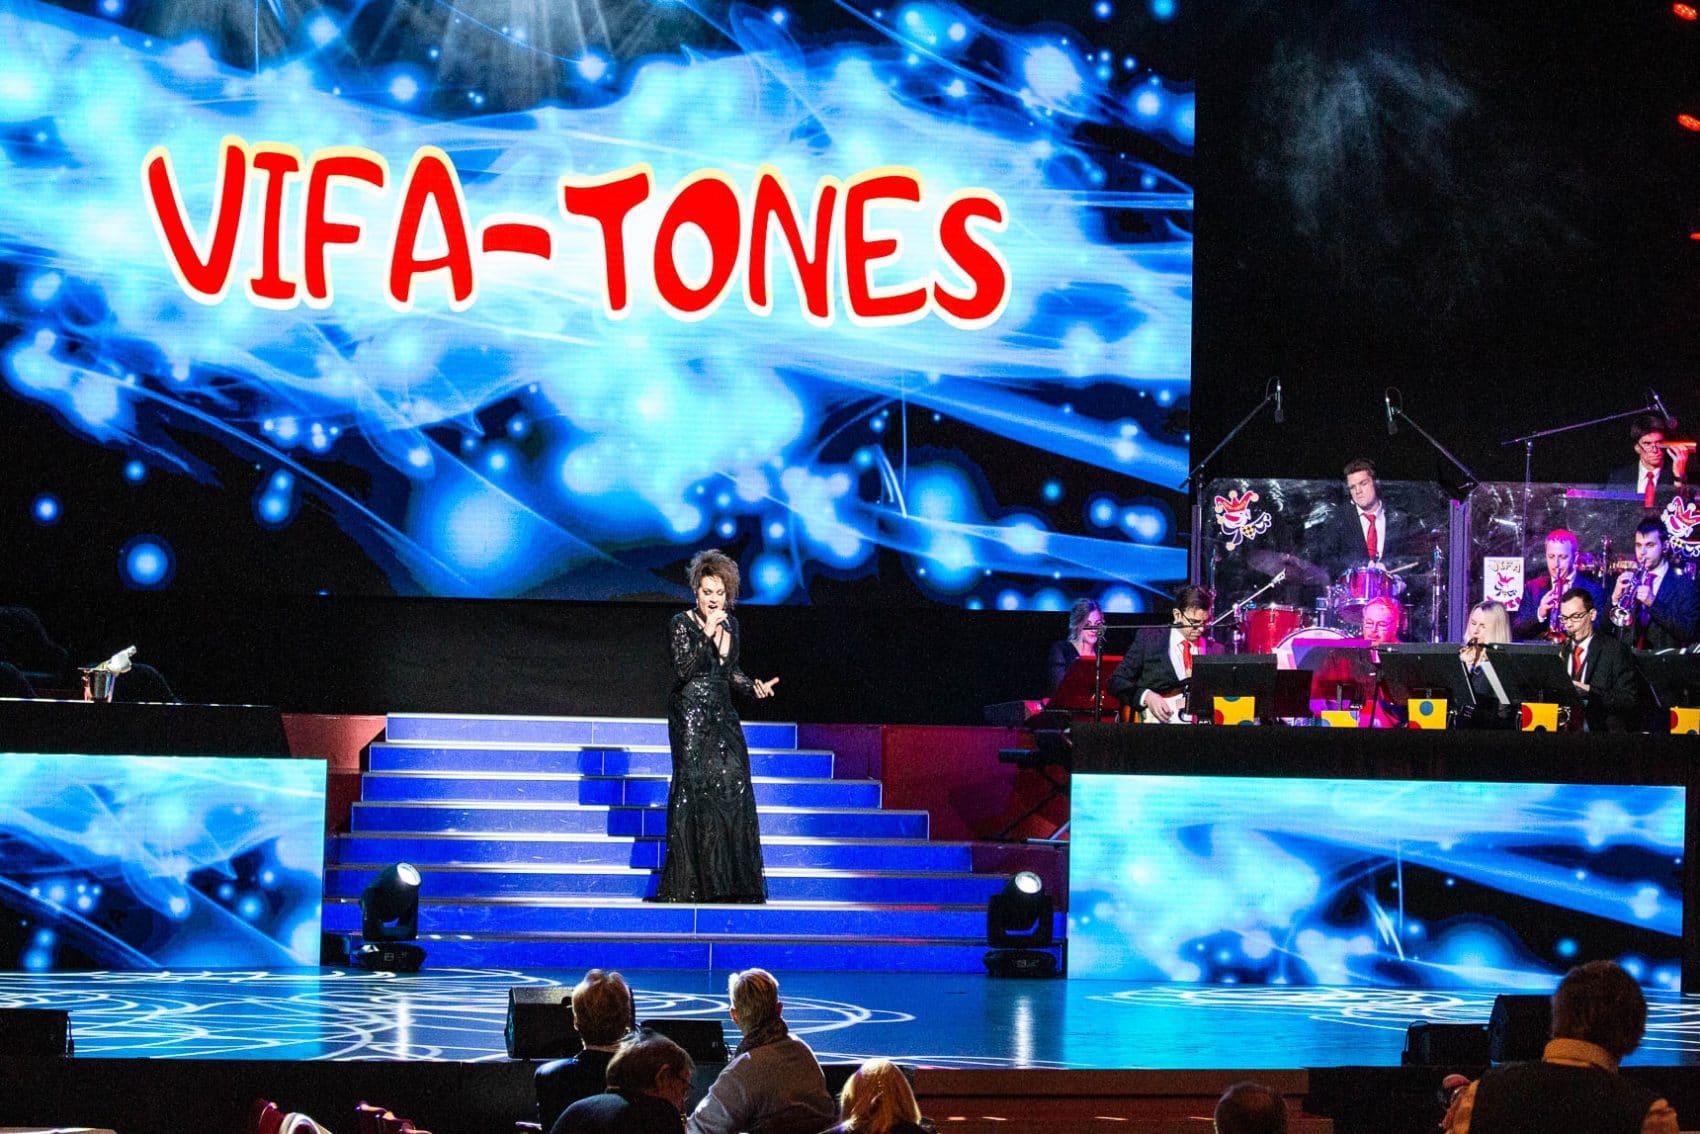 Die Vifa-Tones feierten Premiere zur Premierensitzung.